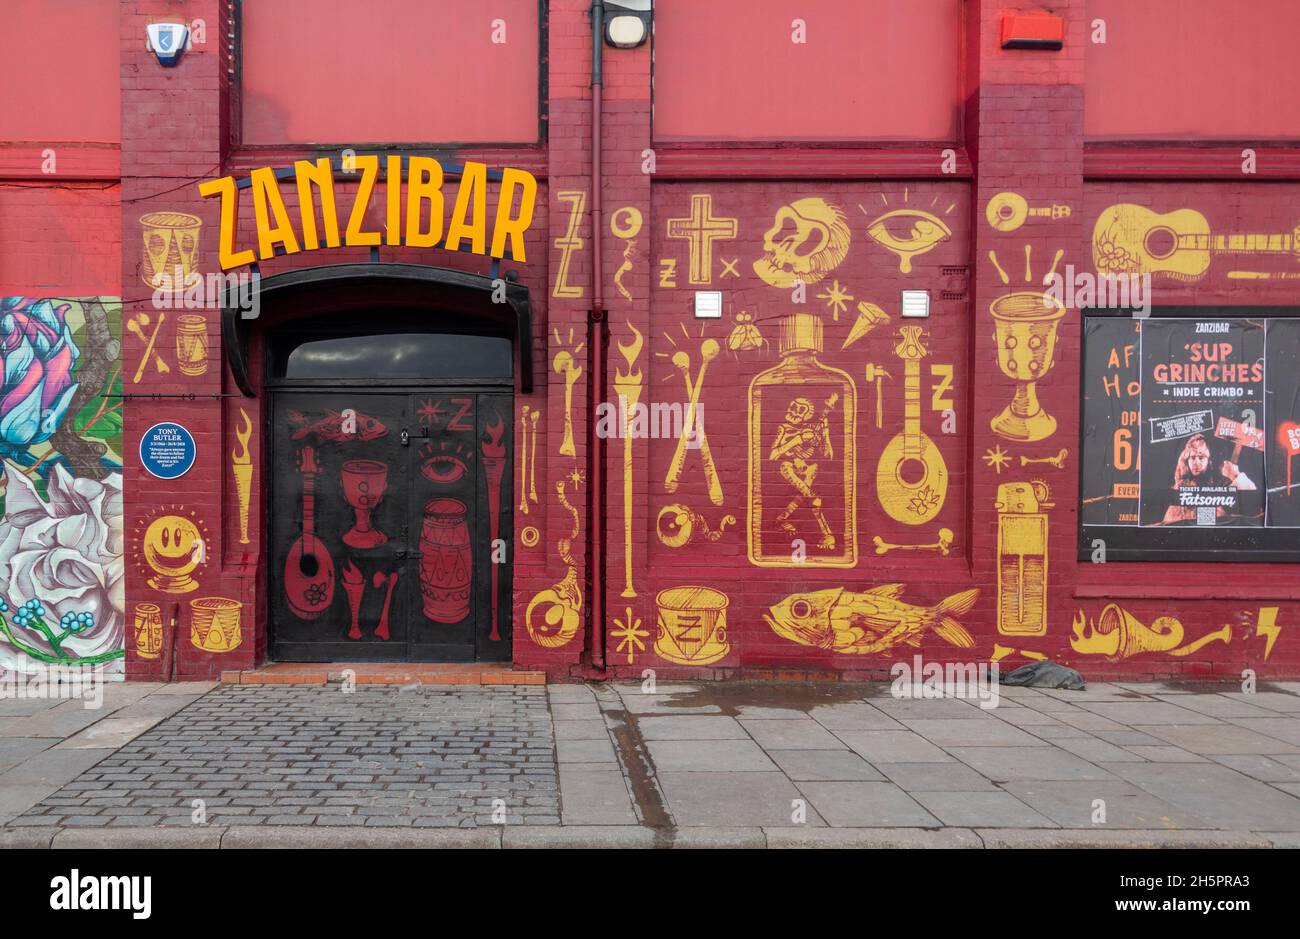 Outside Zanzibar music club in Liverpool City Centre Stock Photo